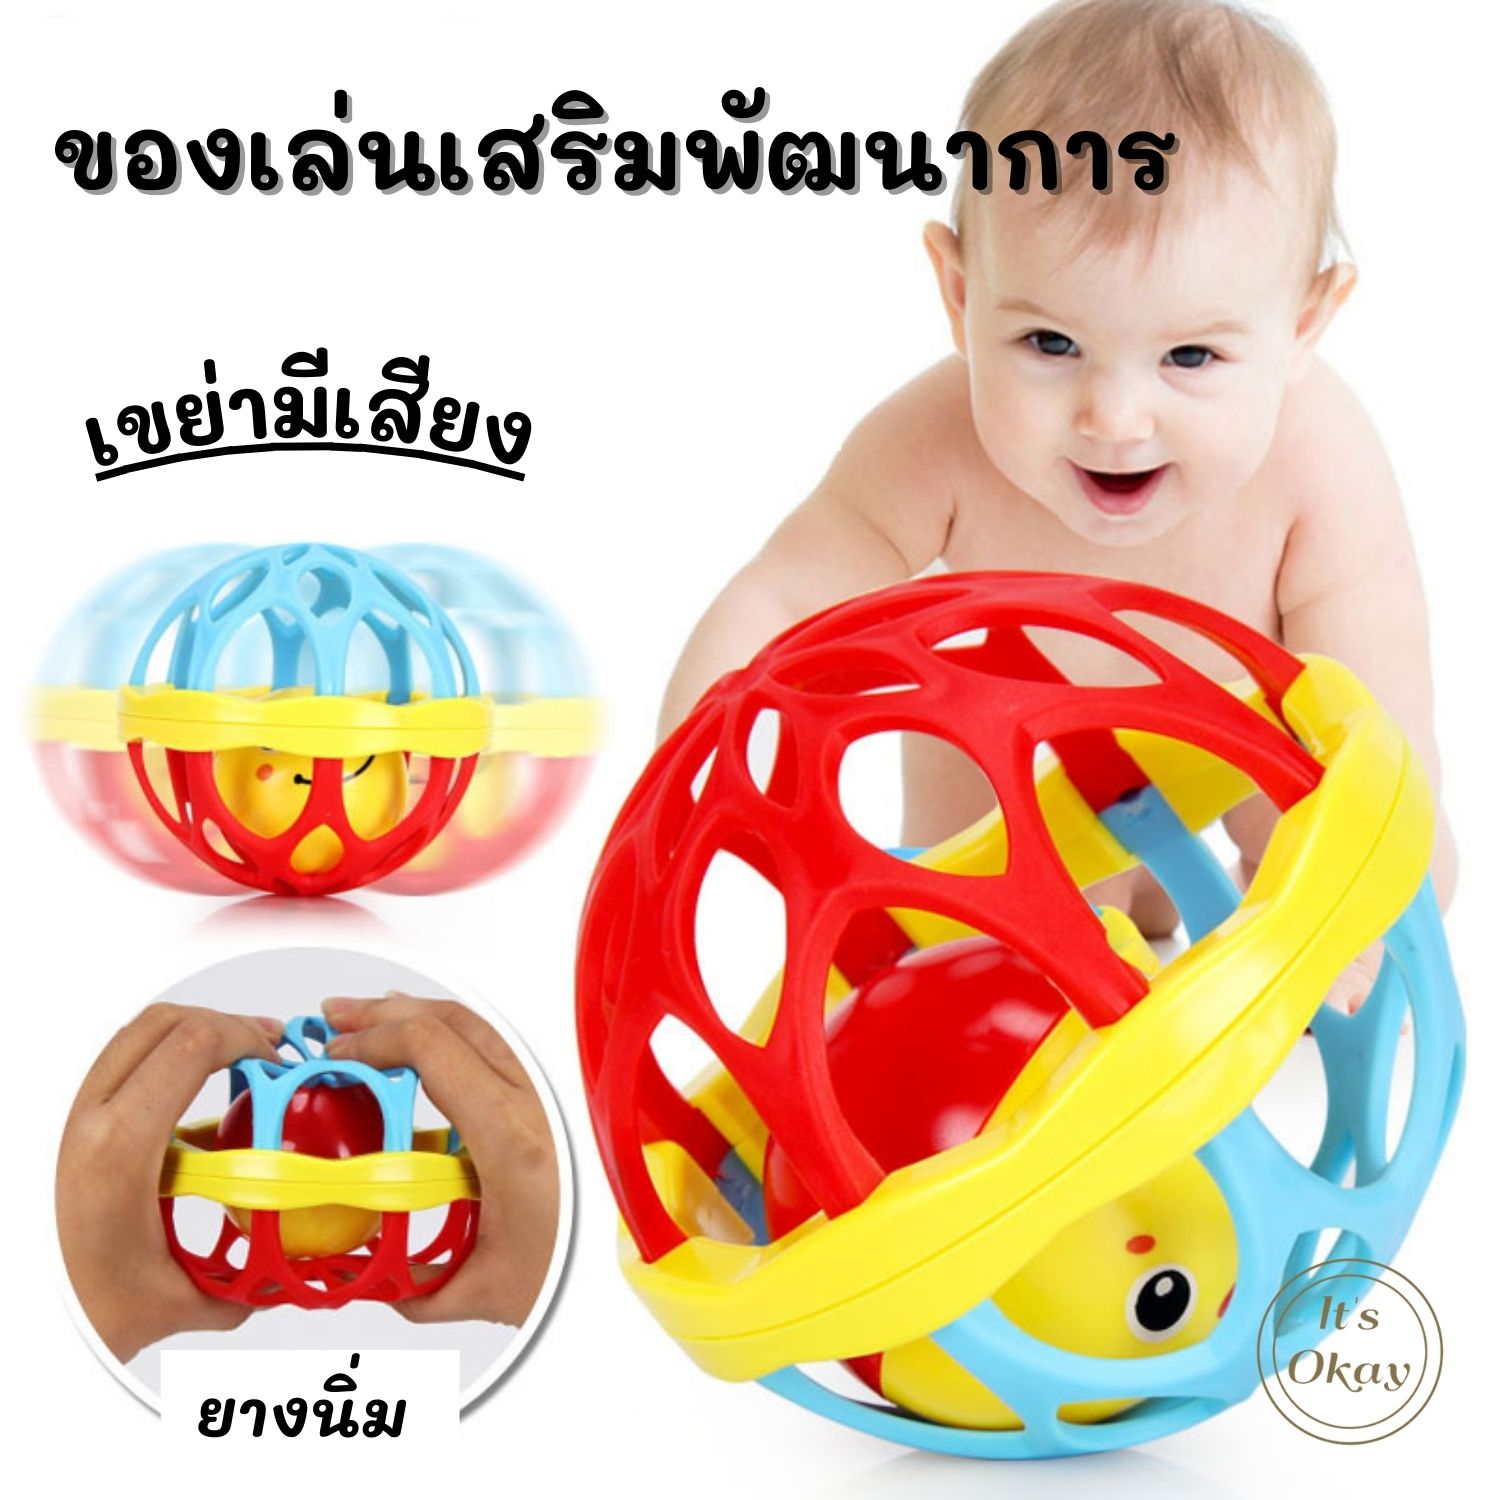 🌈 ของเล่นเสริมพัฒนาการ ของเล่นเด็กเขย่ามือ ยางกัดเด็ก ยางกัดนิ่มเขย่ามีเสียง มีกระดิ่งเขย่า ของเล่นเด็ก ของเล่น ลูกบอล baby new born  OK105